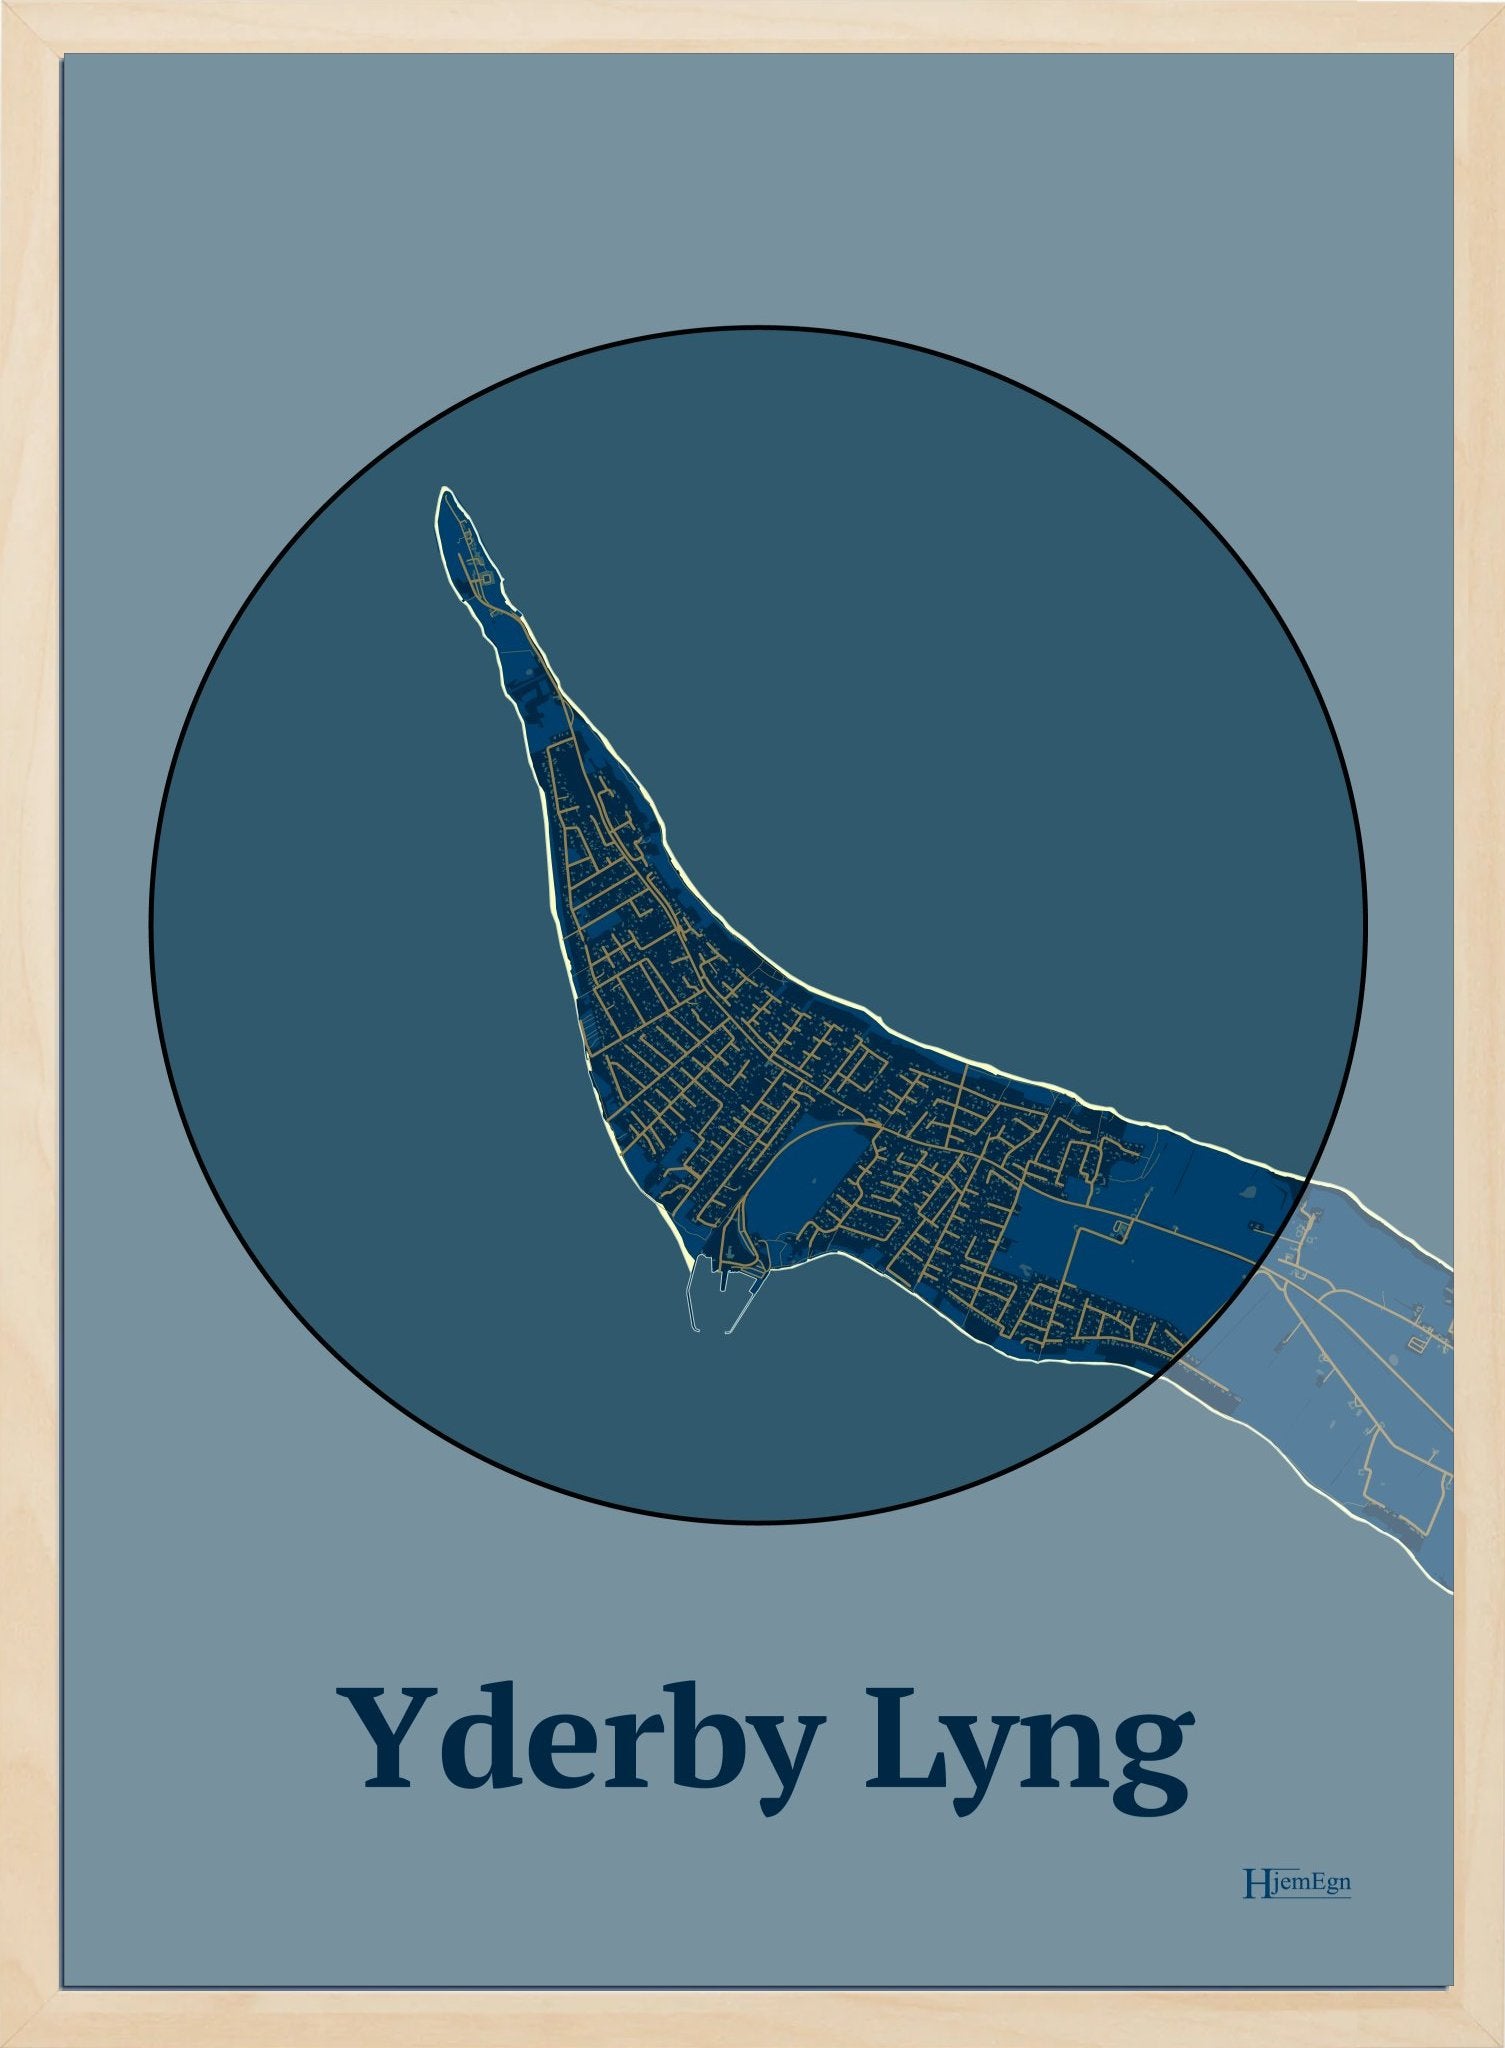 Yderby Lyng plakat i farve mørk blå og HjemEgn.dk design centrum. Design bykort for Yderby Lyng